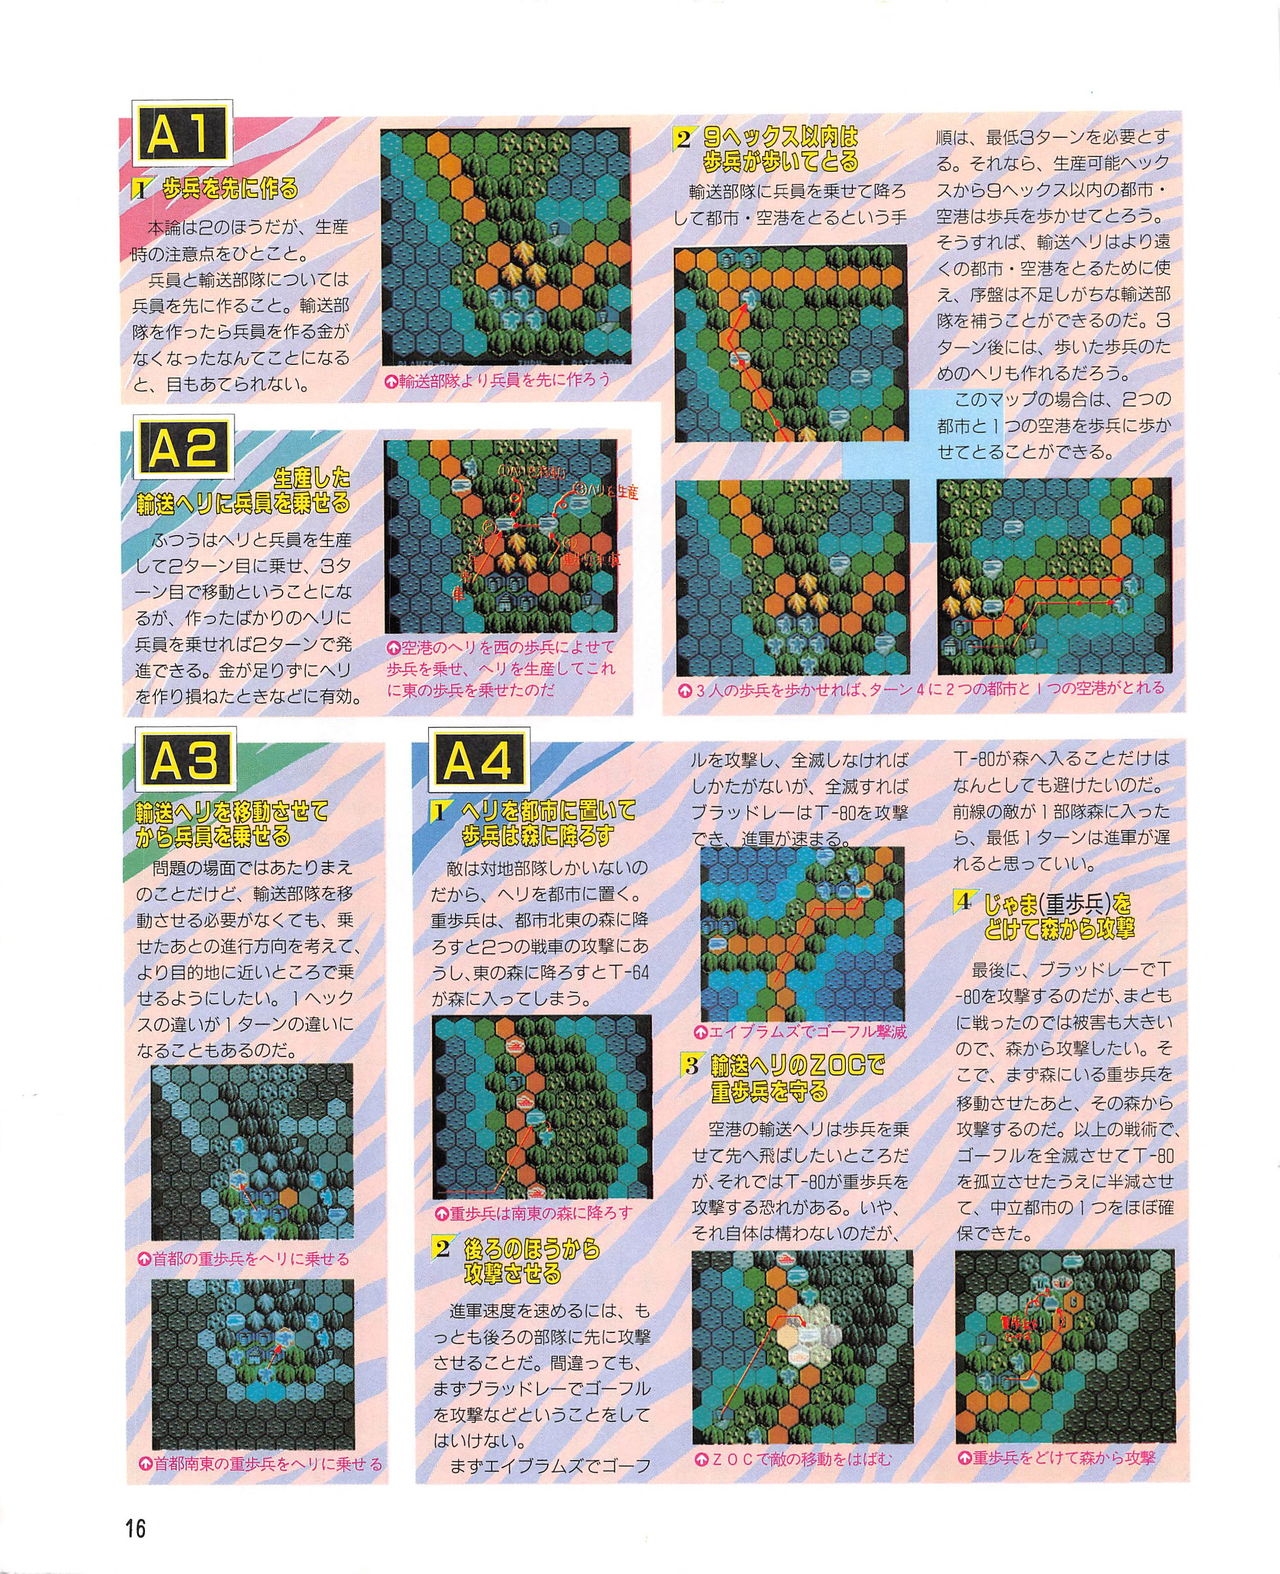 MSX Fan 1989-02 15